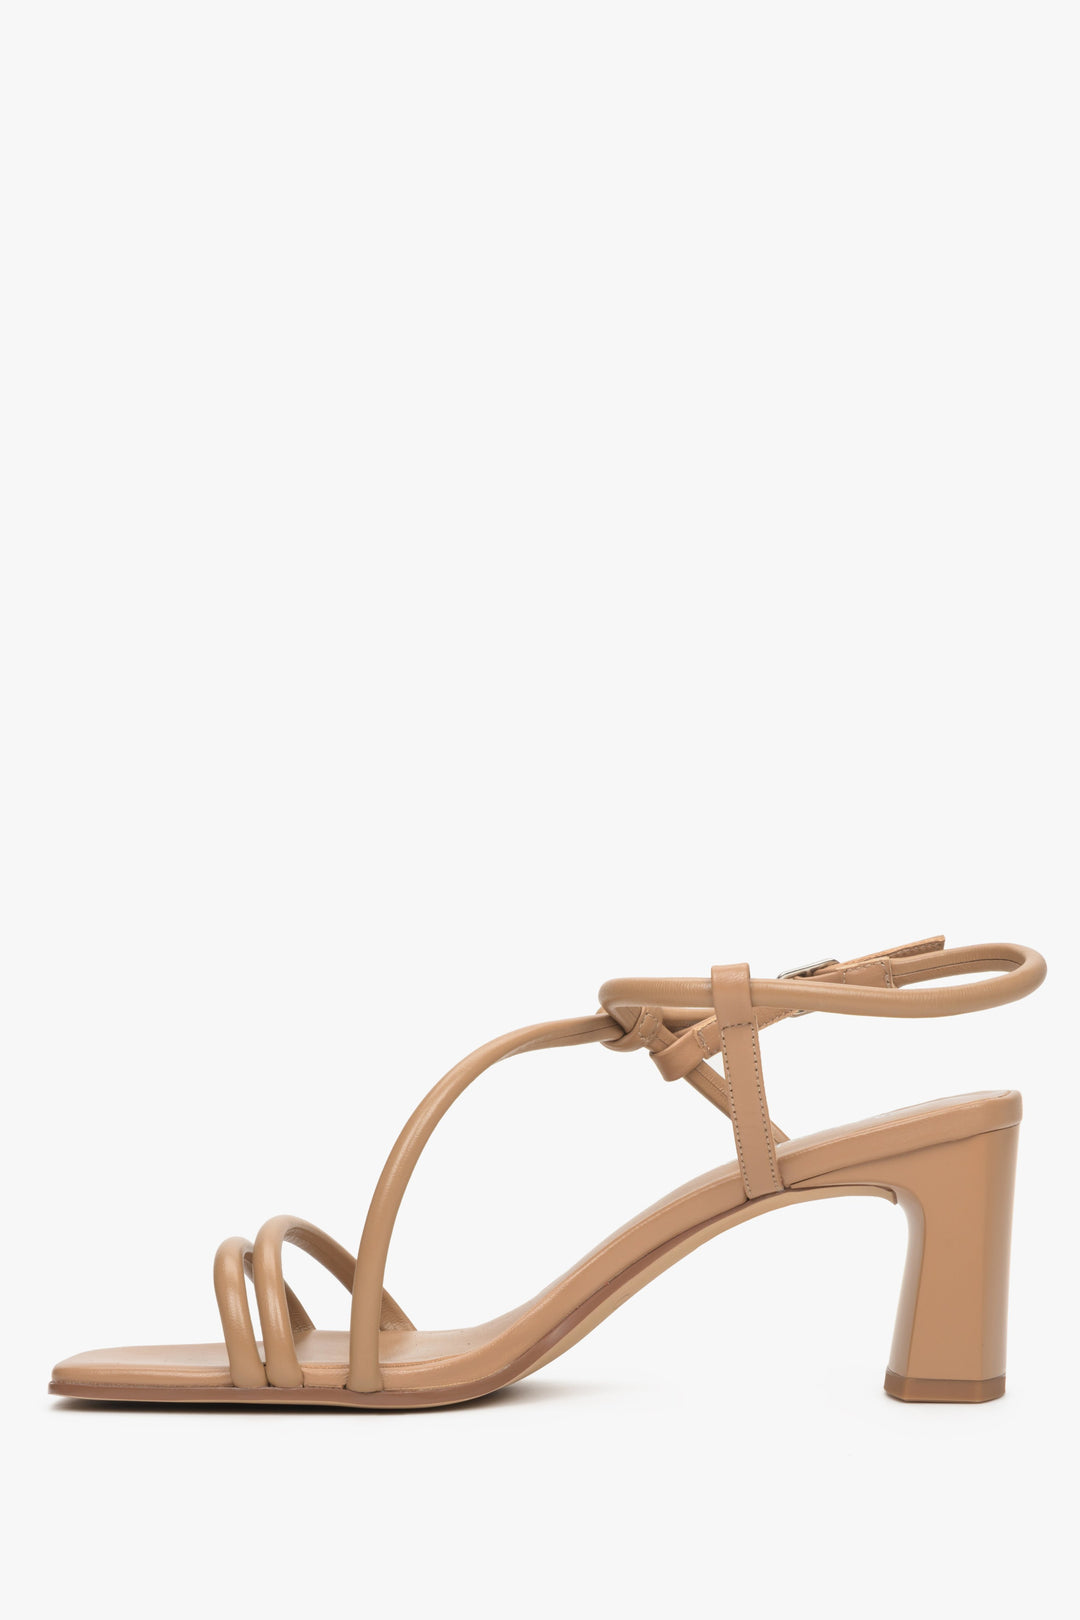 Block heel strappy women's sandals in light brown, Estro brand.